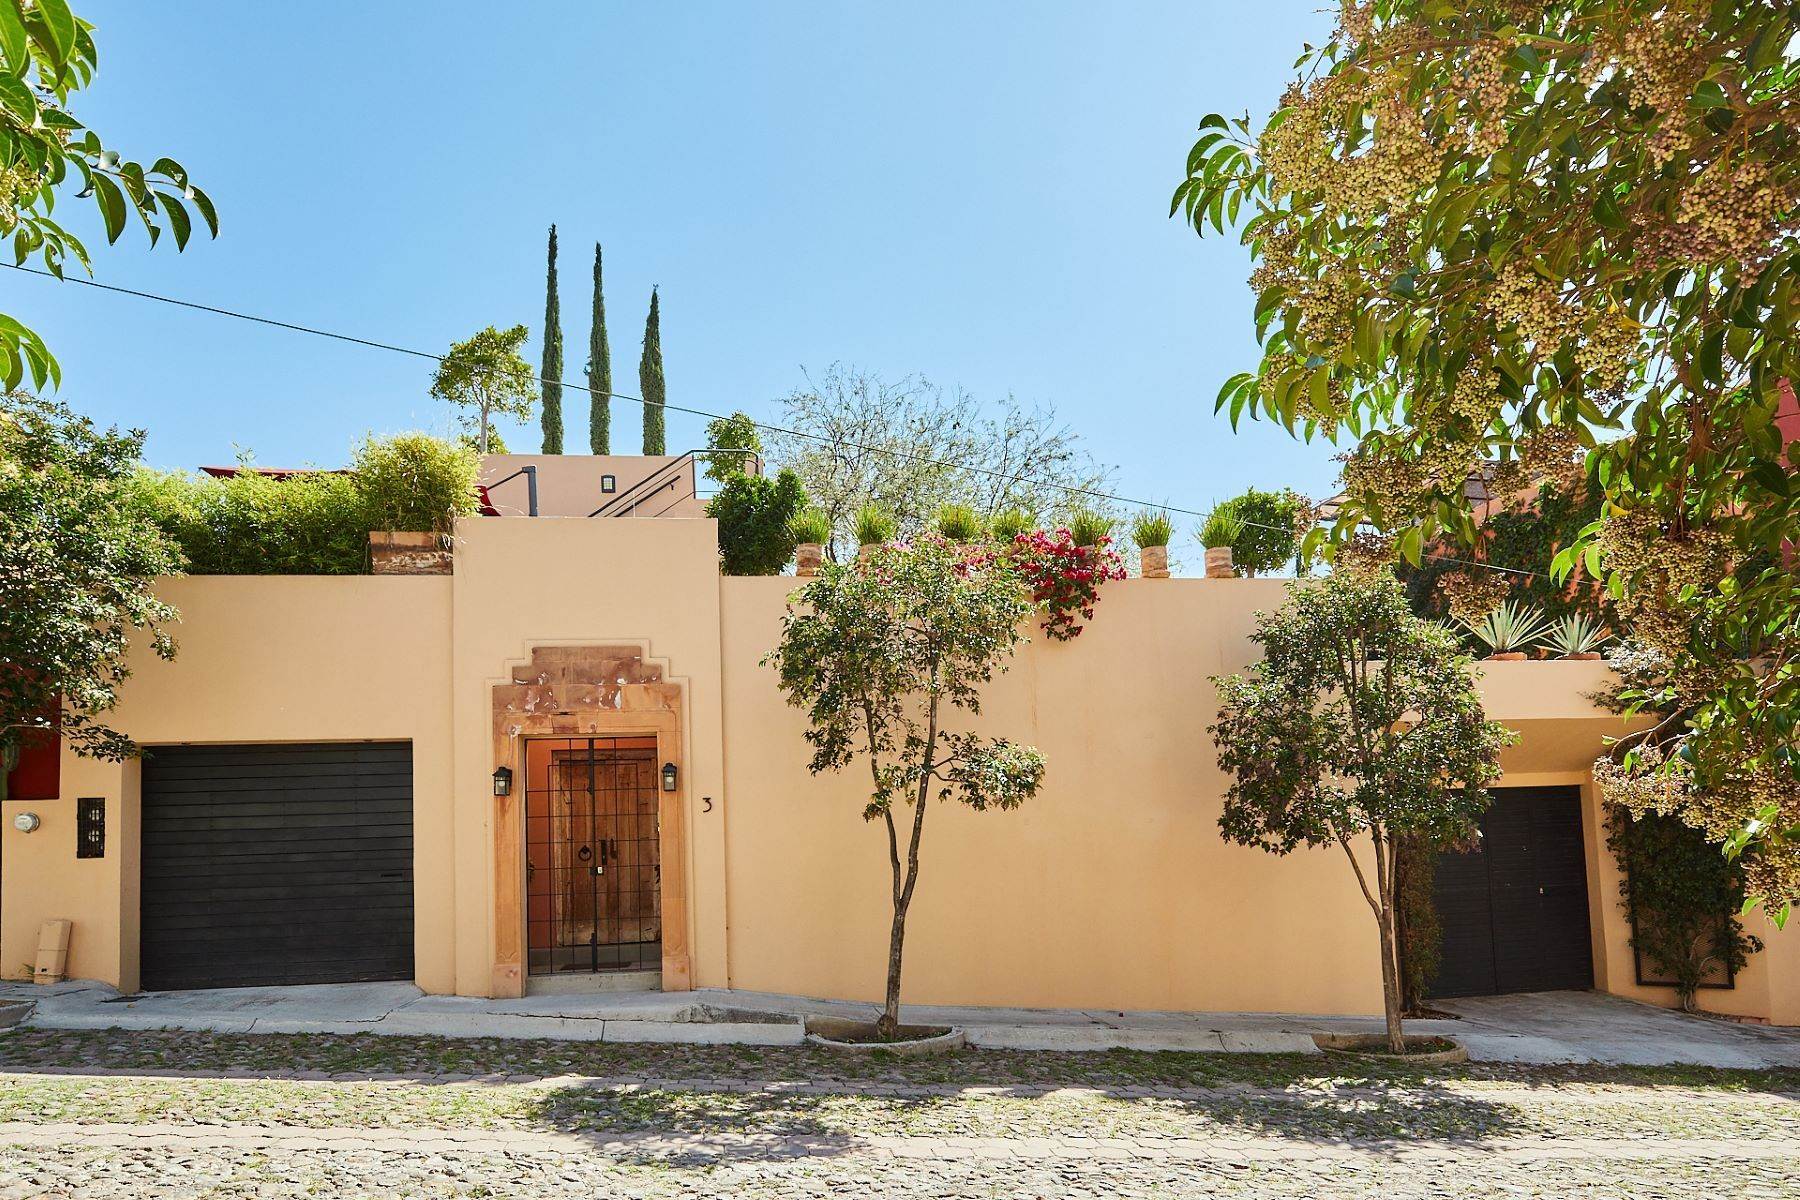 Property for Sale at Casa Guadalupana Guadalupana #3 San Miguel De Allende, Guanajuato 37717 Mexico